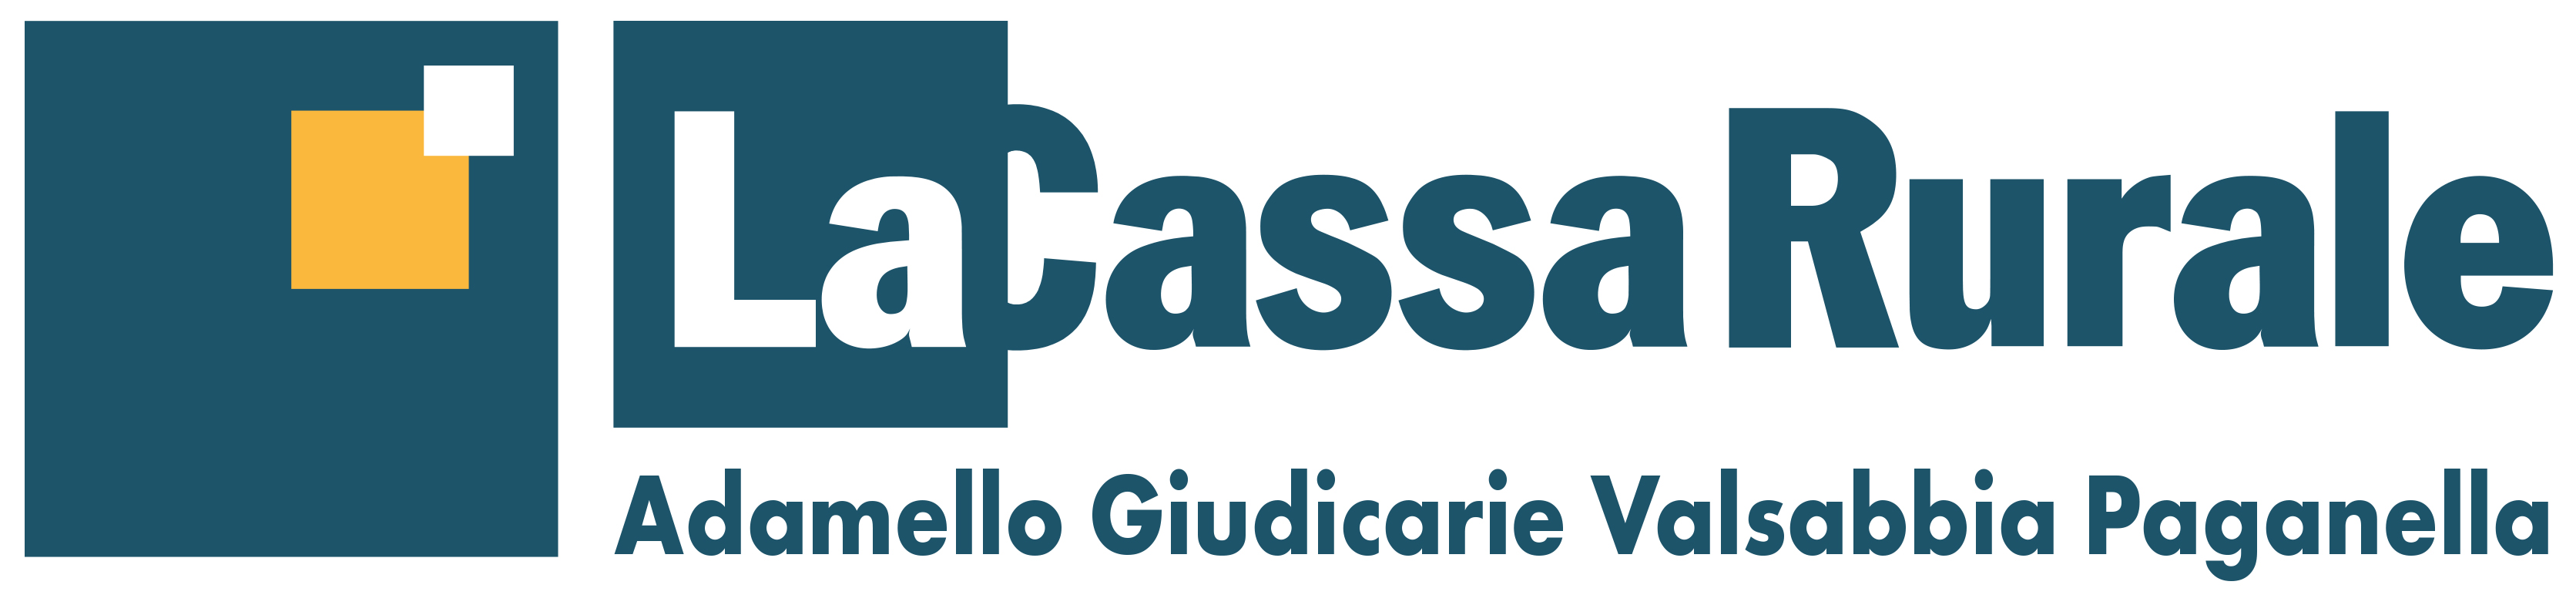 La Cassa Rurale_logo.jpg